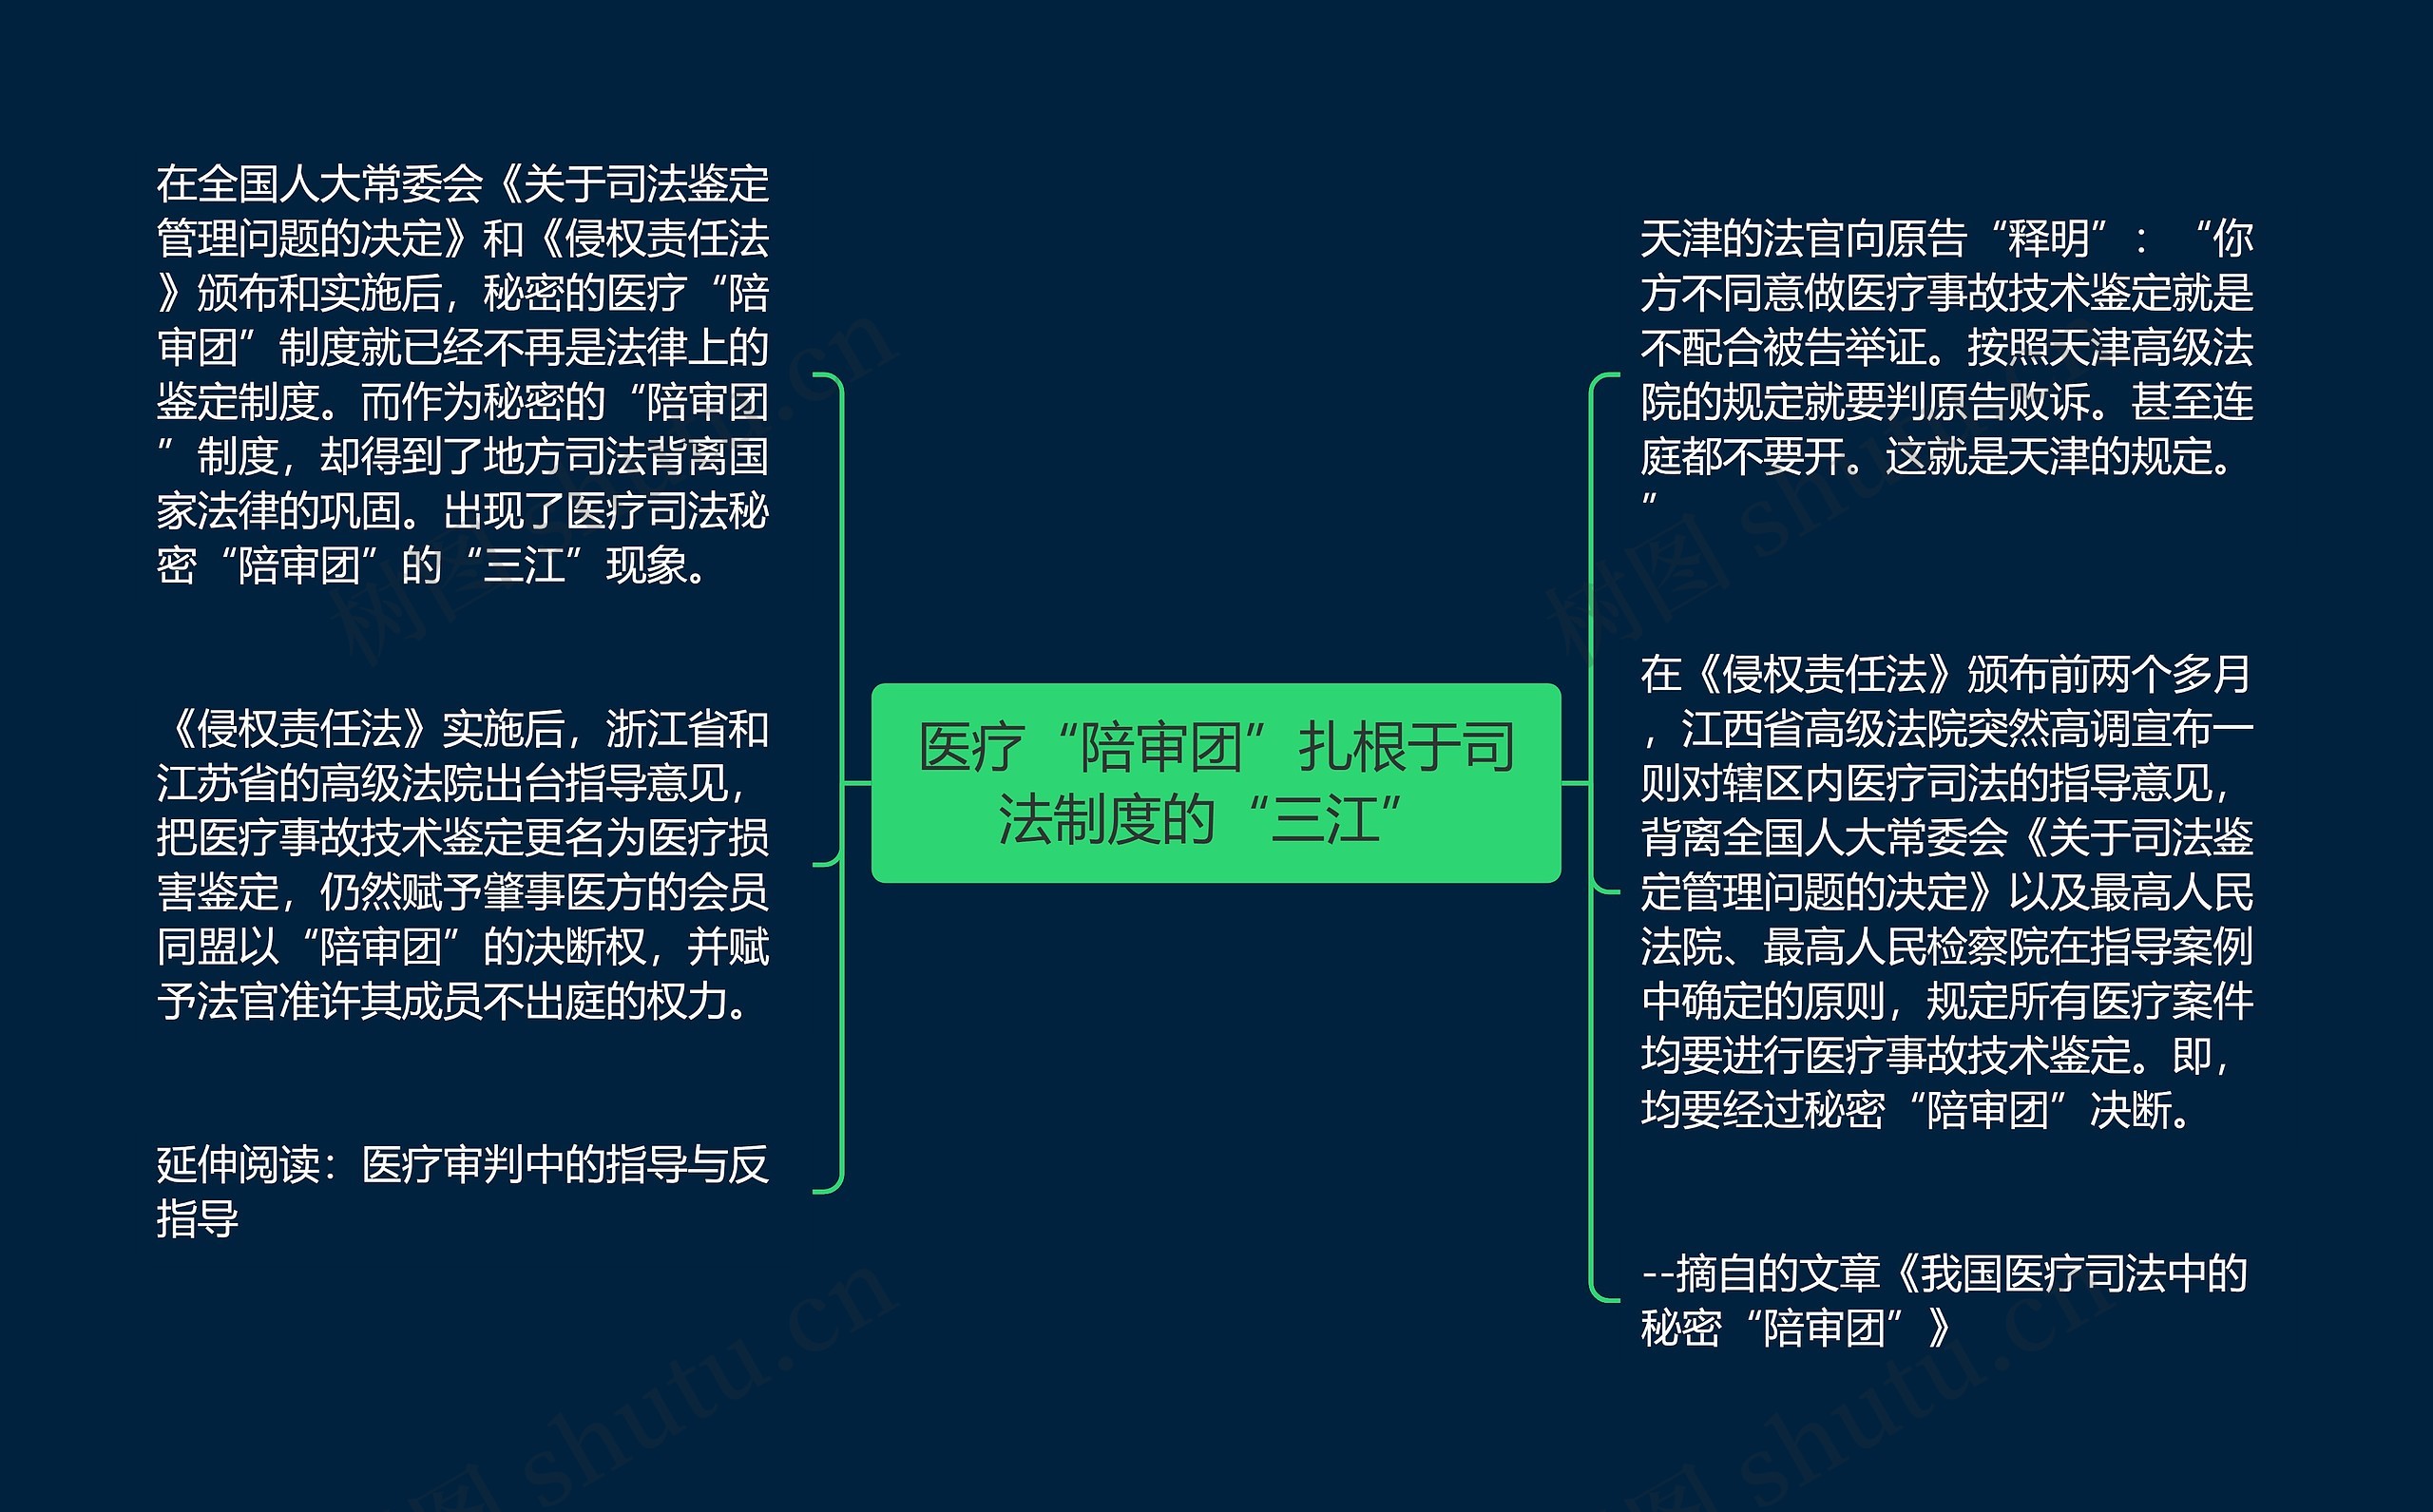 医疗“陪审团”扎根于司法制度的“三江”思维导图